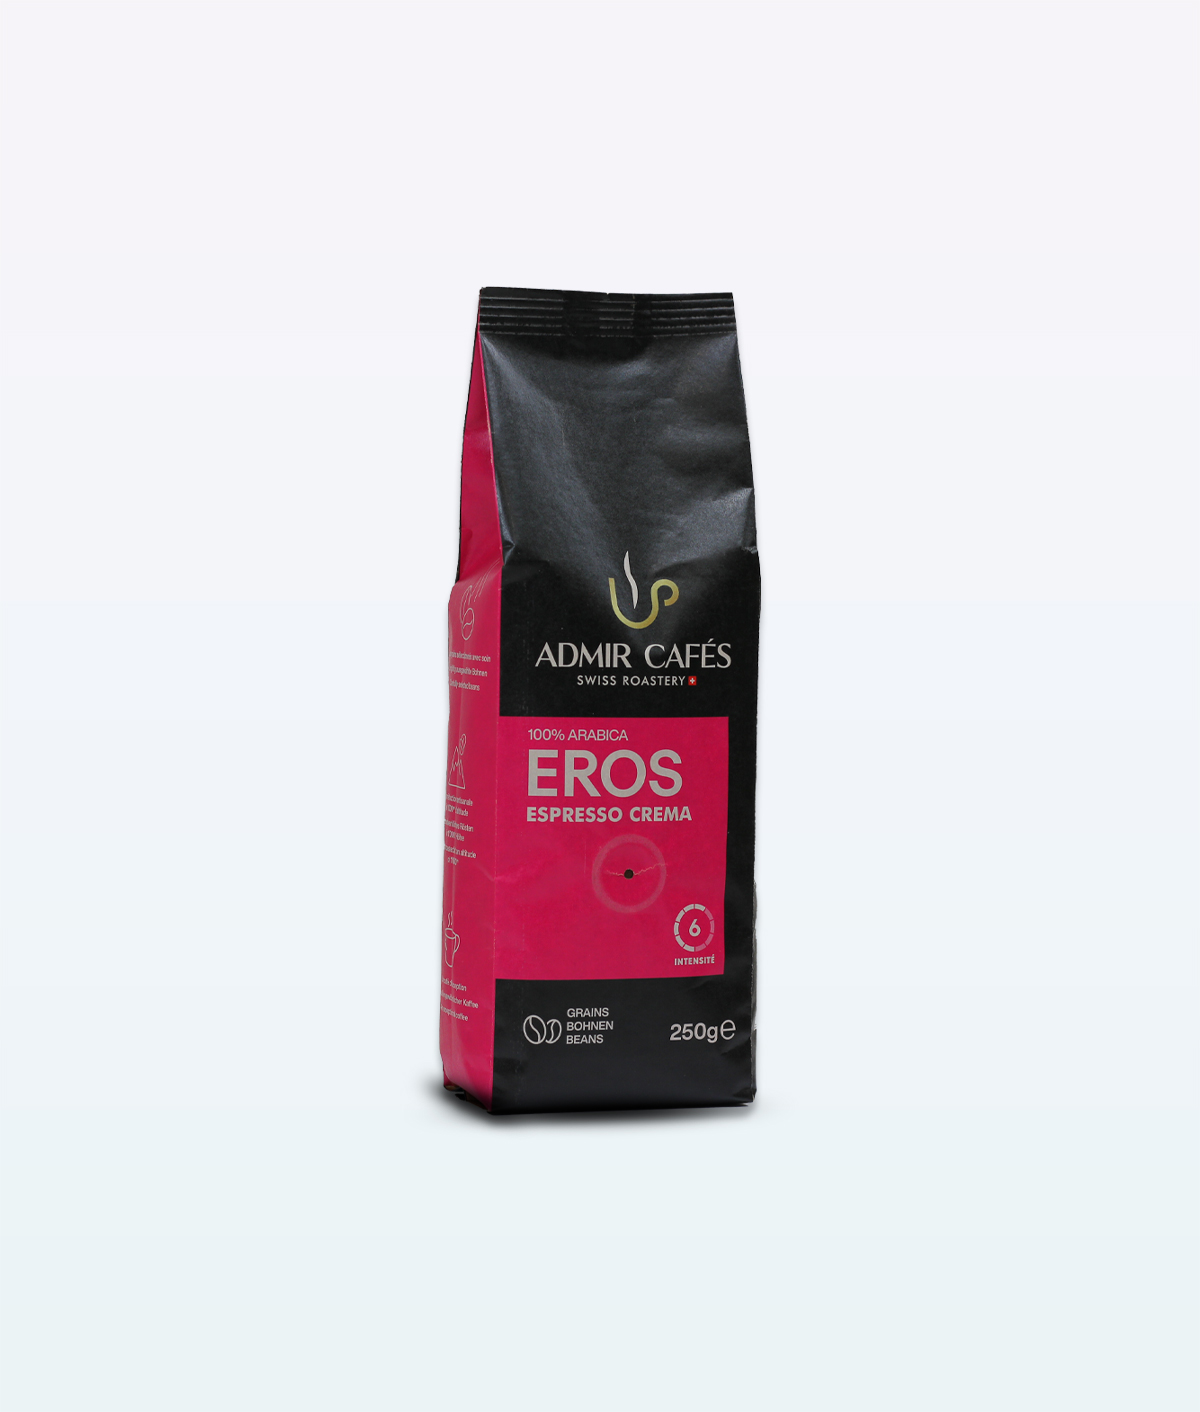 Grains de café Eros Espresso Crema